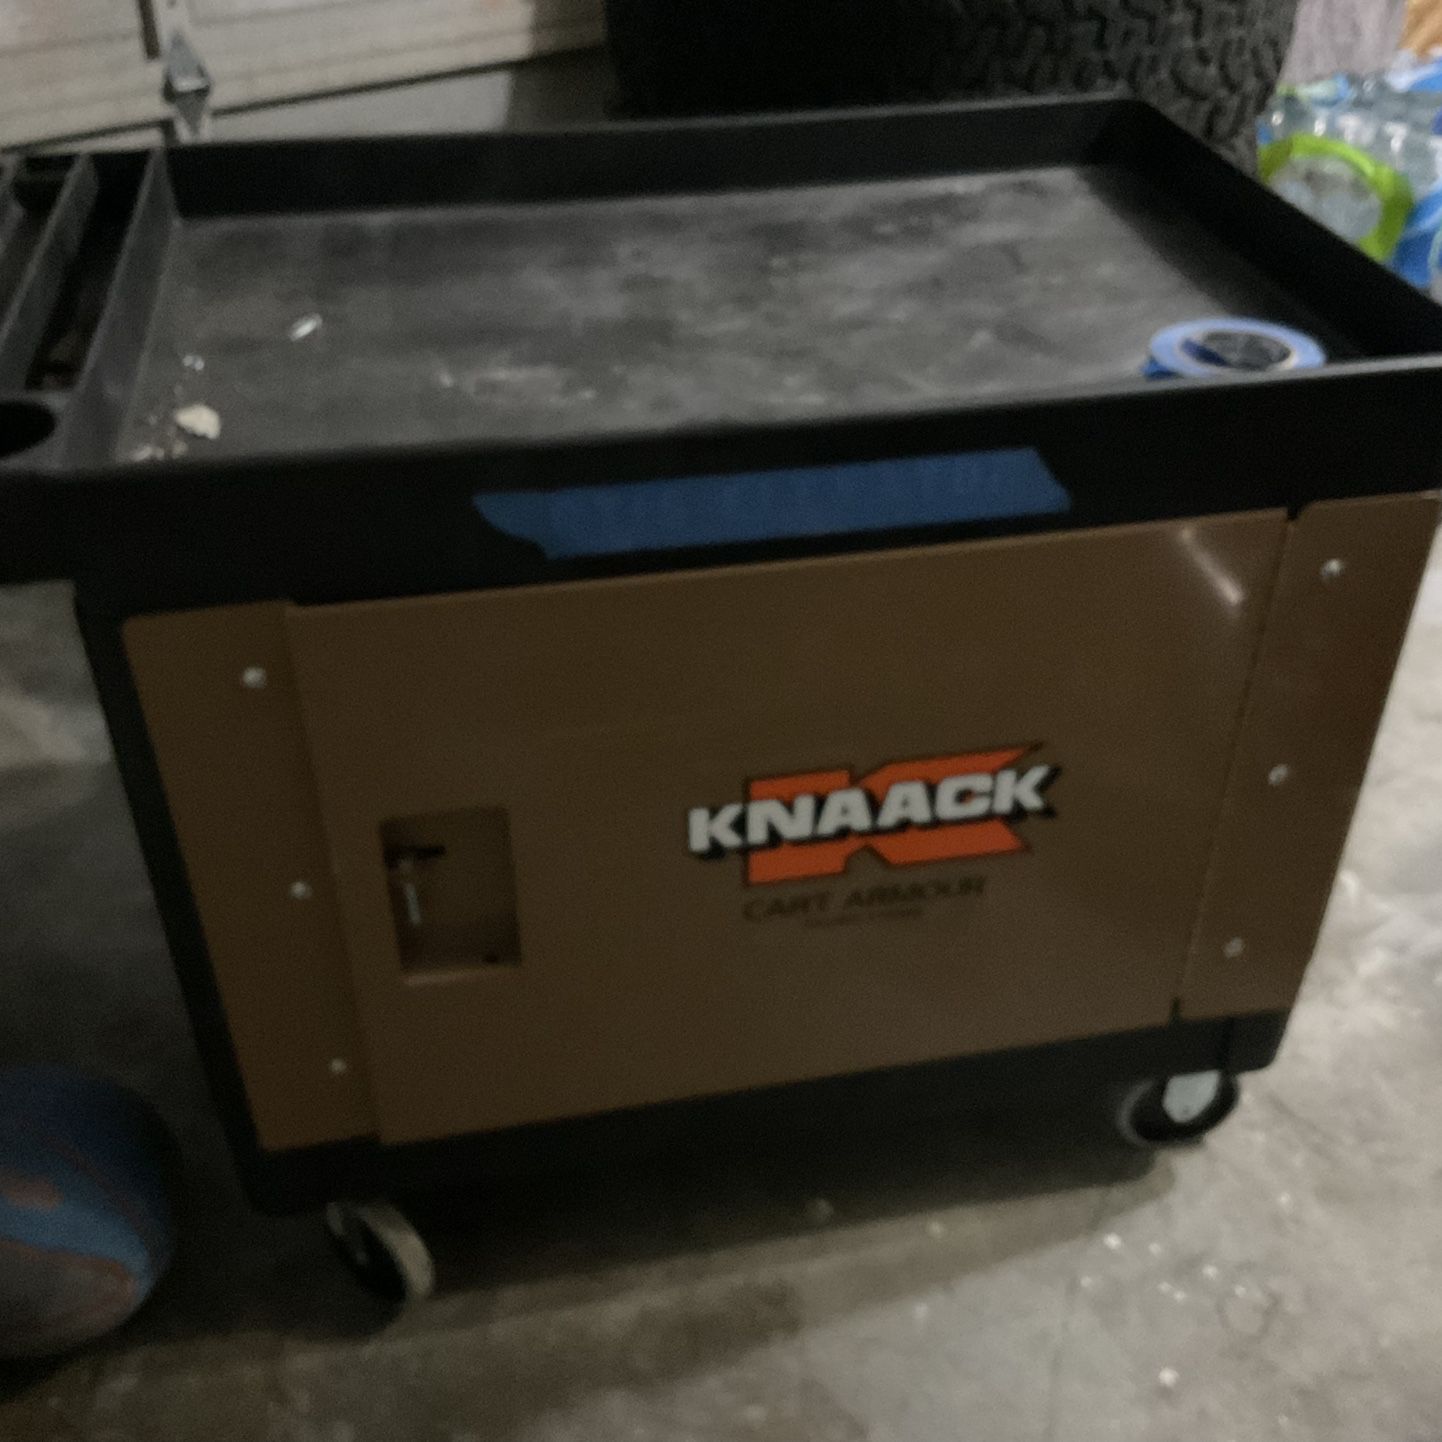 Knaack CA-01 Cart Armour Mobile Cart Security Paneling